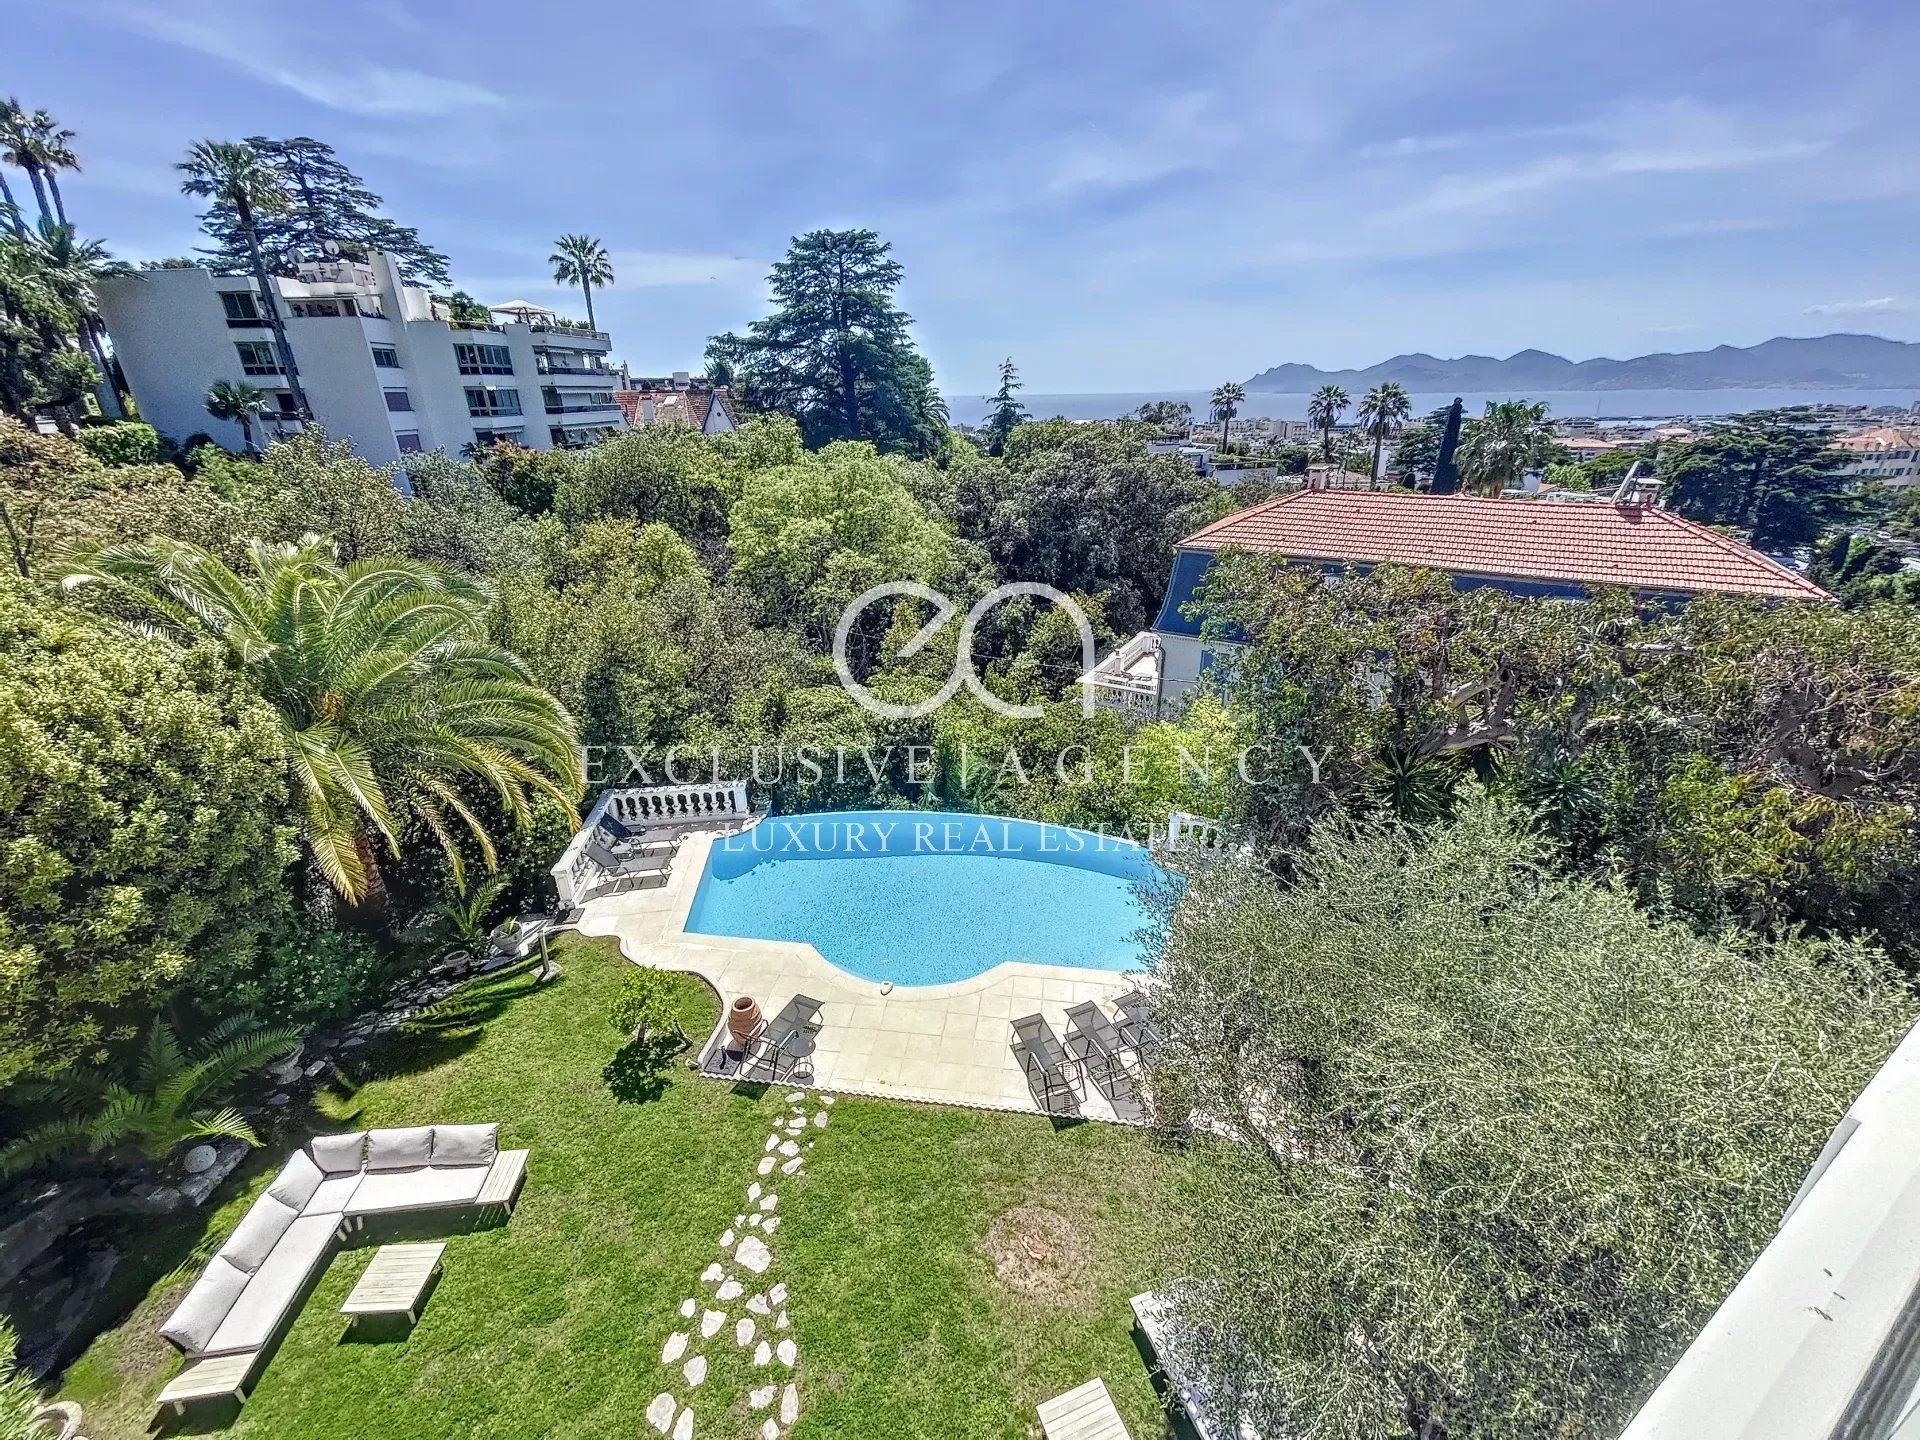 Location saisonnière Cannes villa 380m² avec piscine